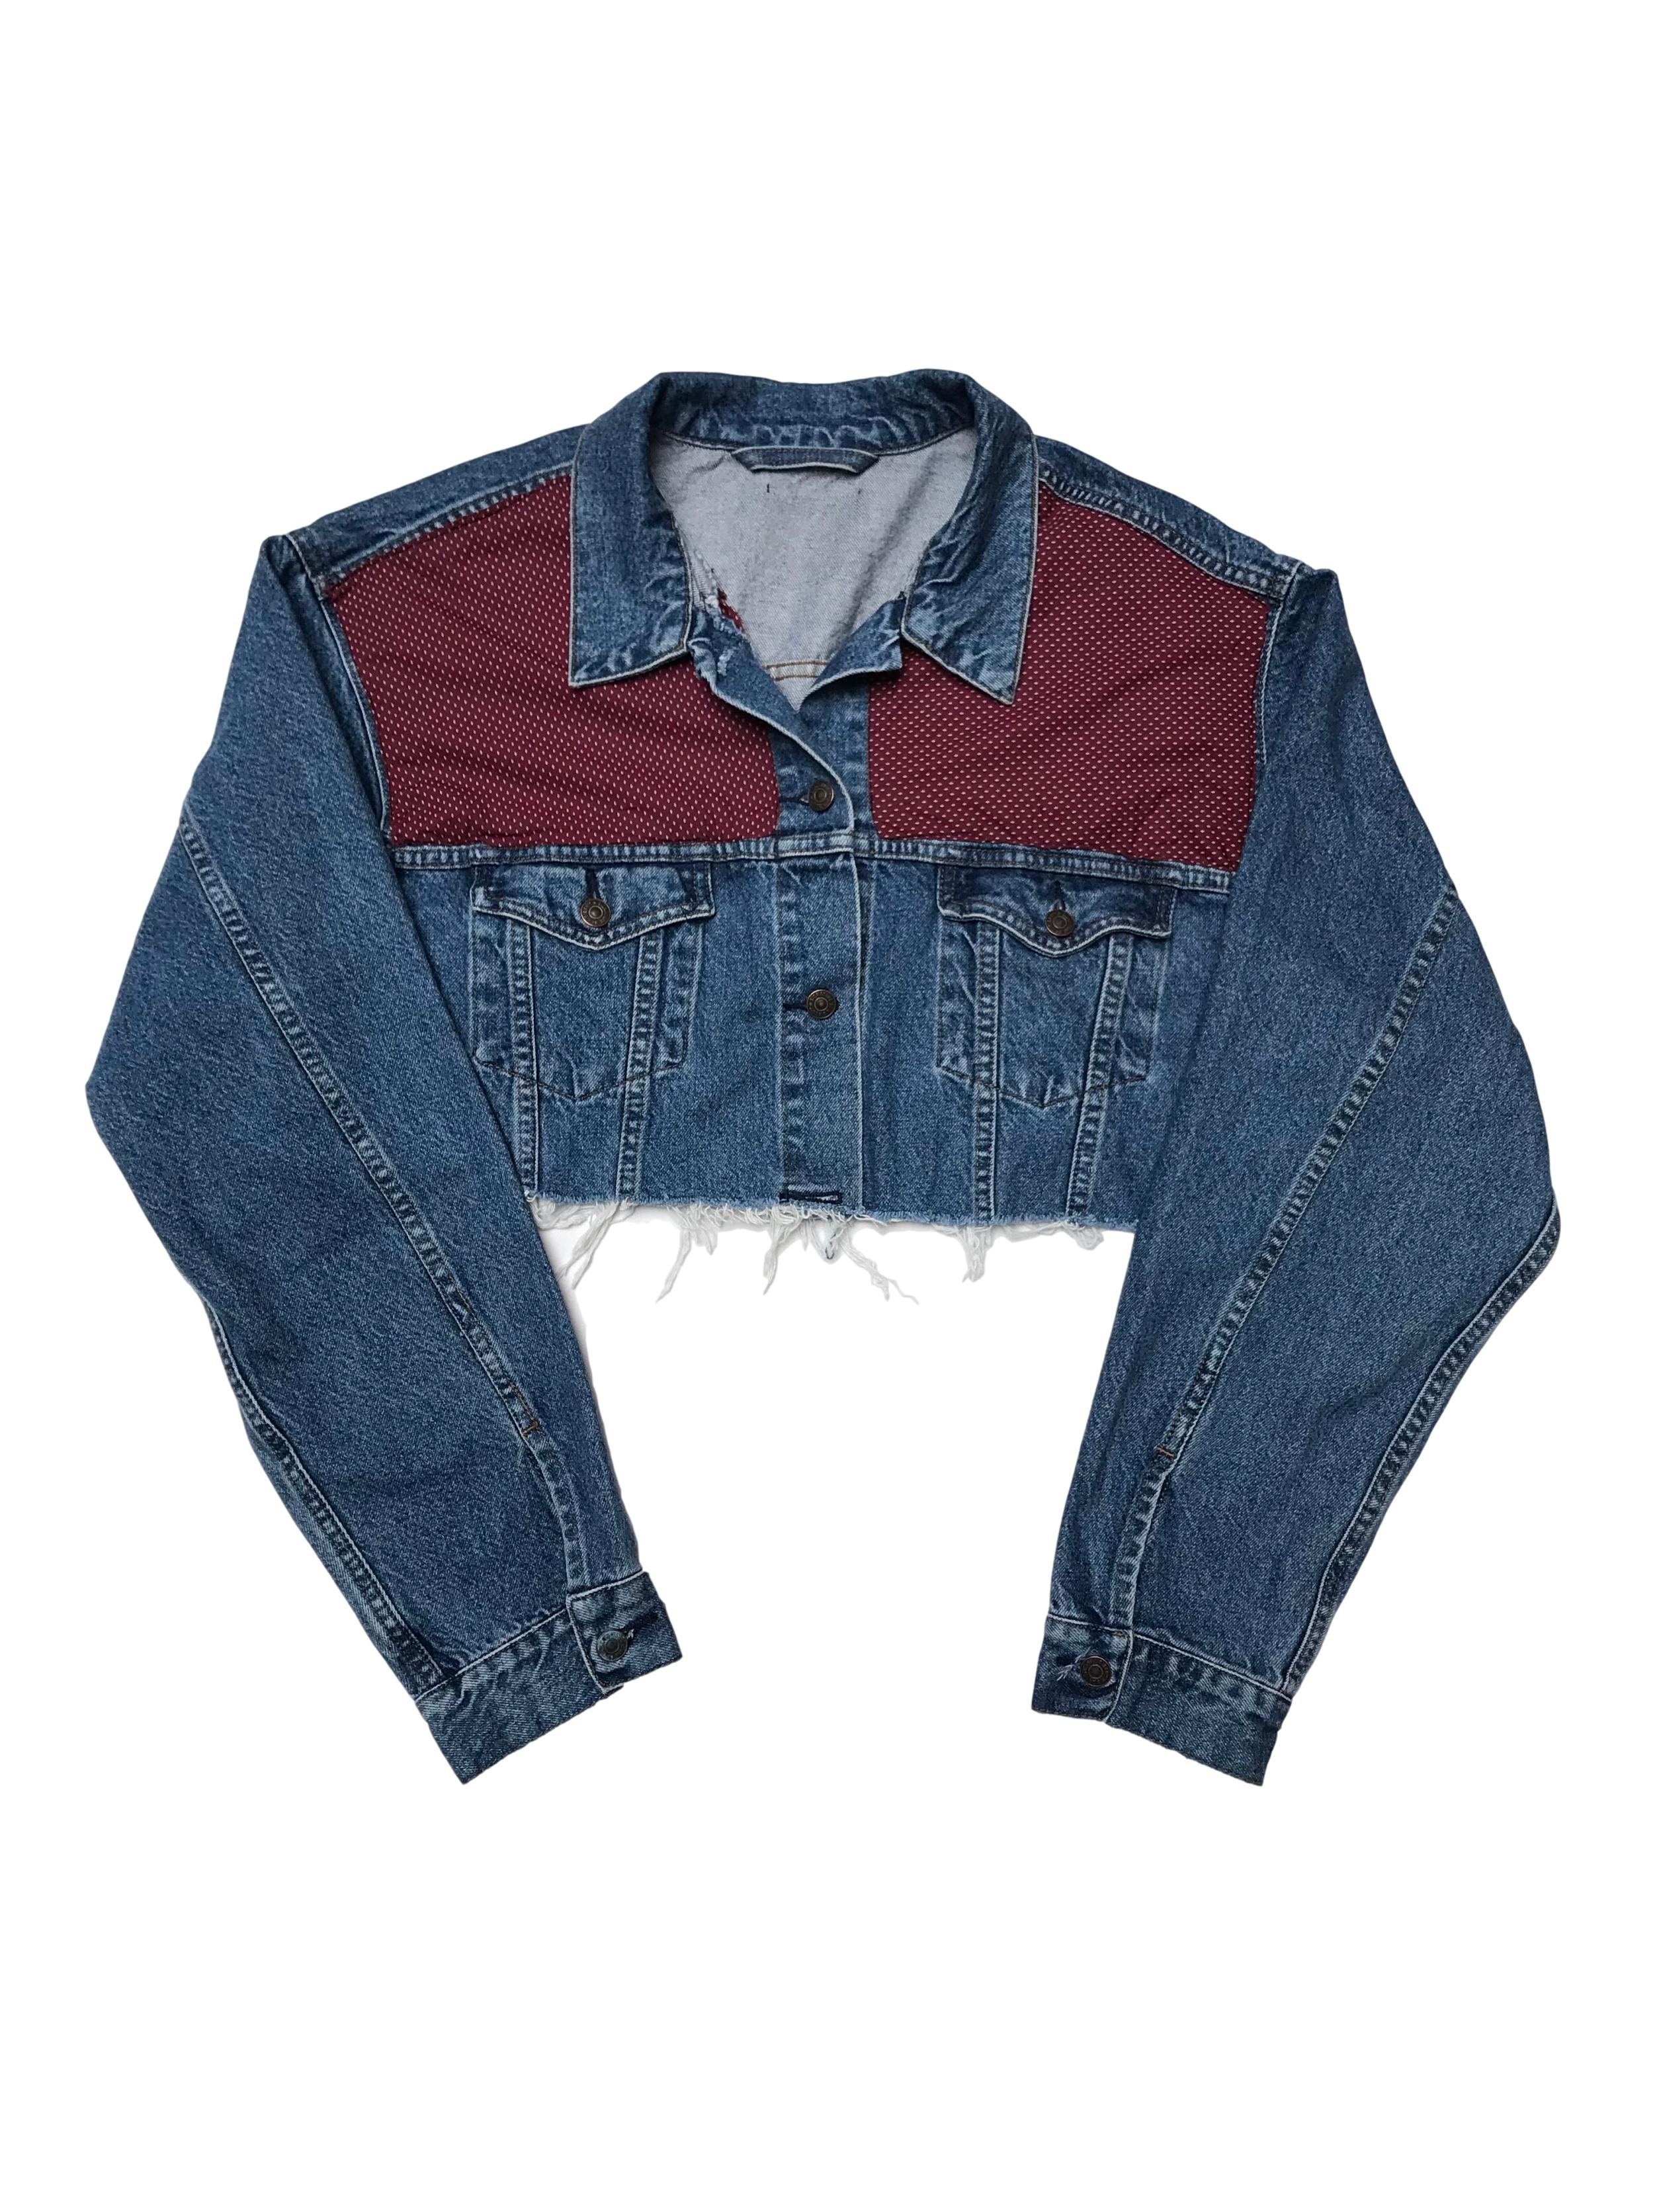 Denim jacket crop vintage intervenida con tela. Úsala con los puños remangados, si eres L queda oversize.